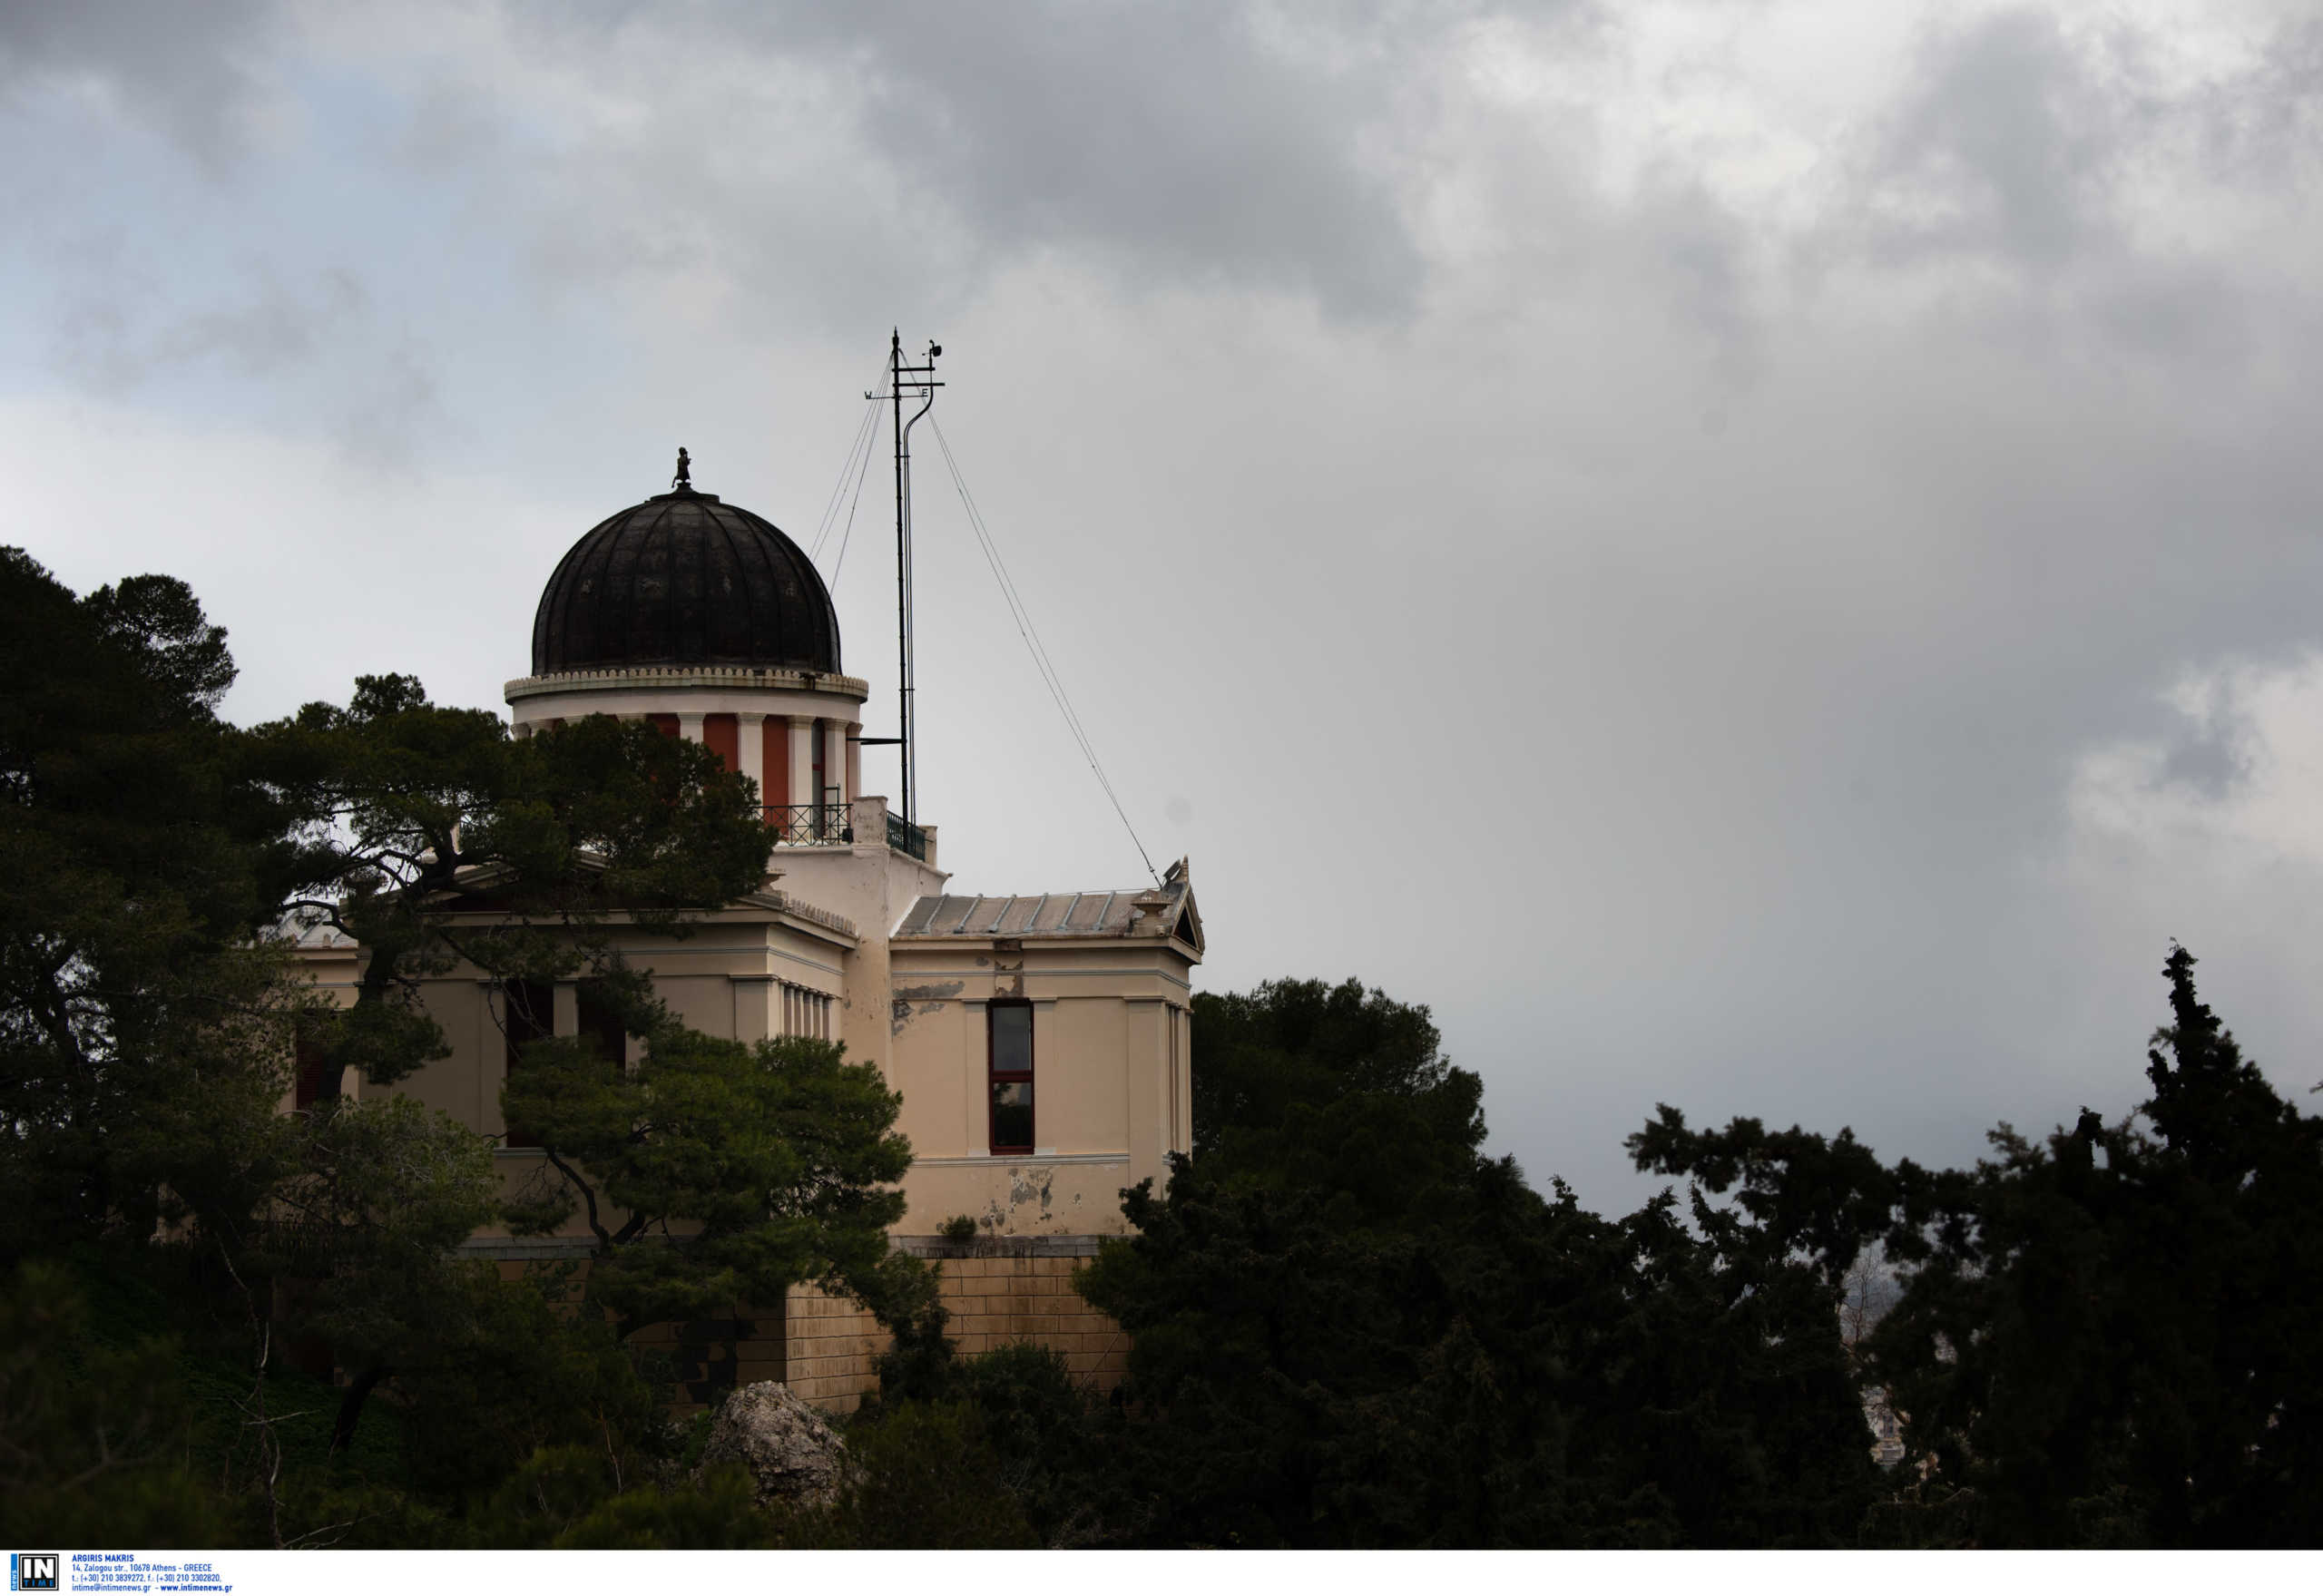 Κορονοϊός: Το Εθνικό Αστεροσκοπείο Αθηνών αναβάλλει τις επισκέψεις και ξεναγήσεις του